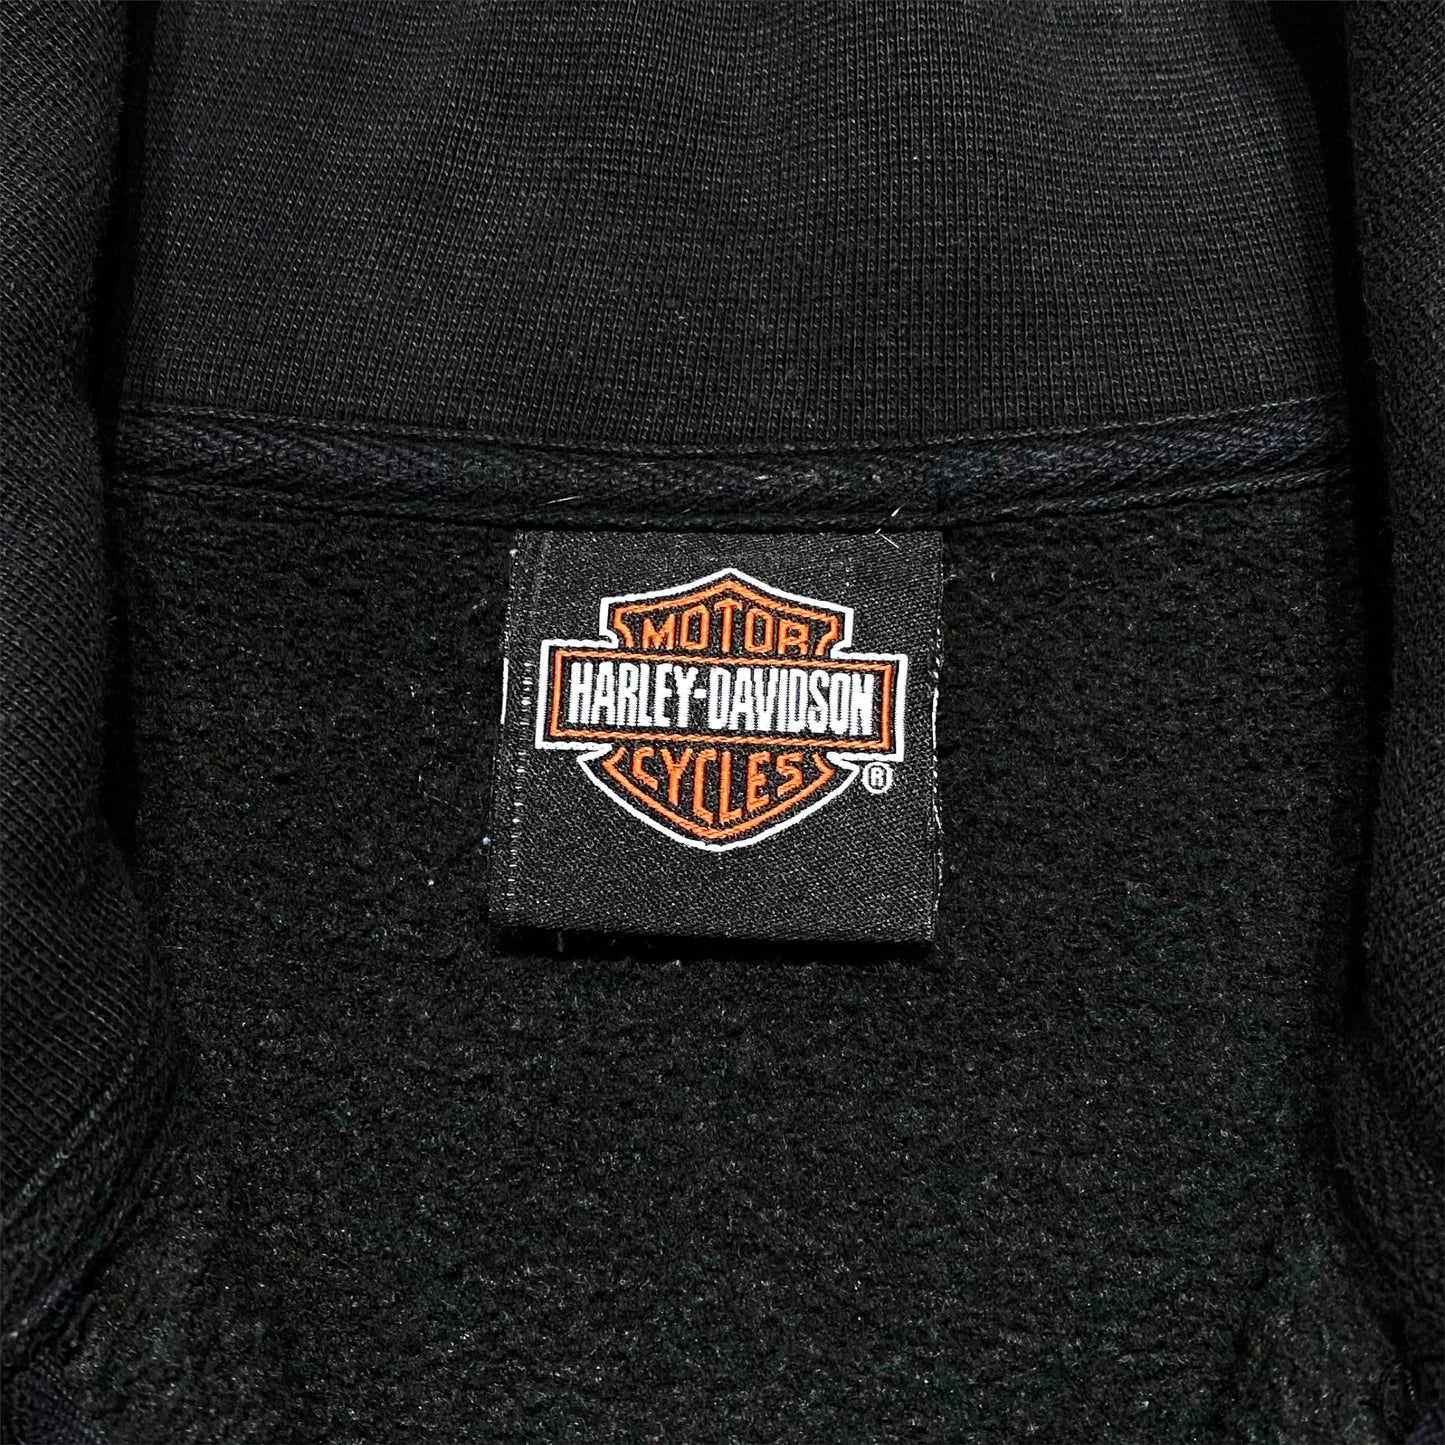 00's "Harley-Davidson" L/S t-shirt